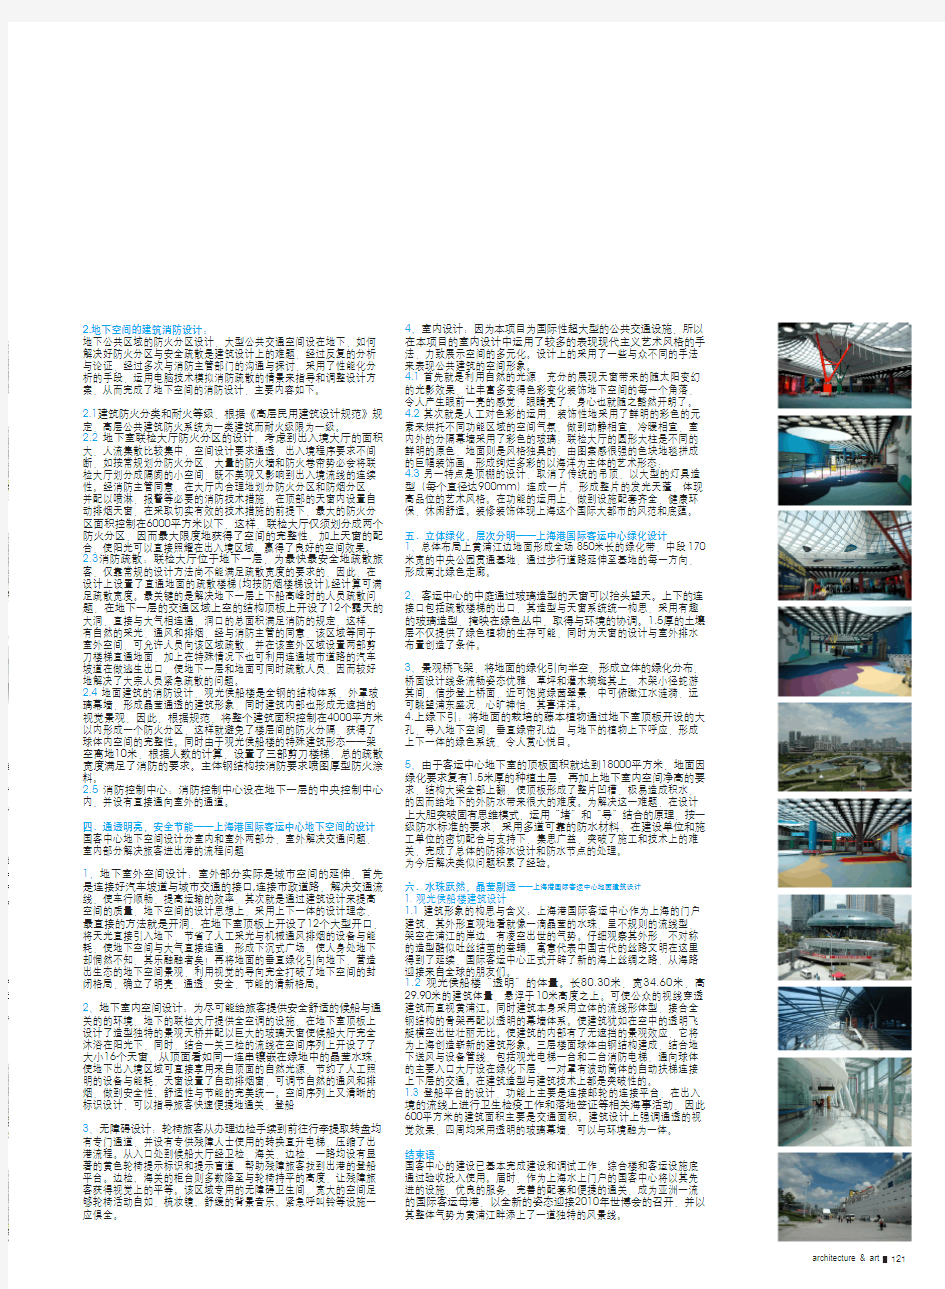 江畔跃水滴_地下展通途_上海港国际客运中心建筑设计